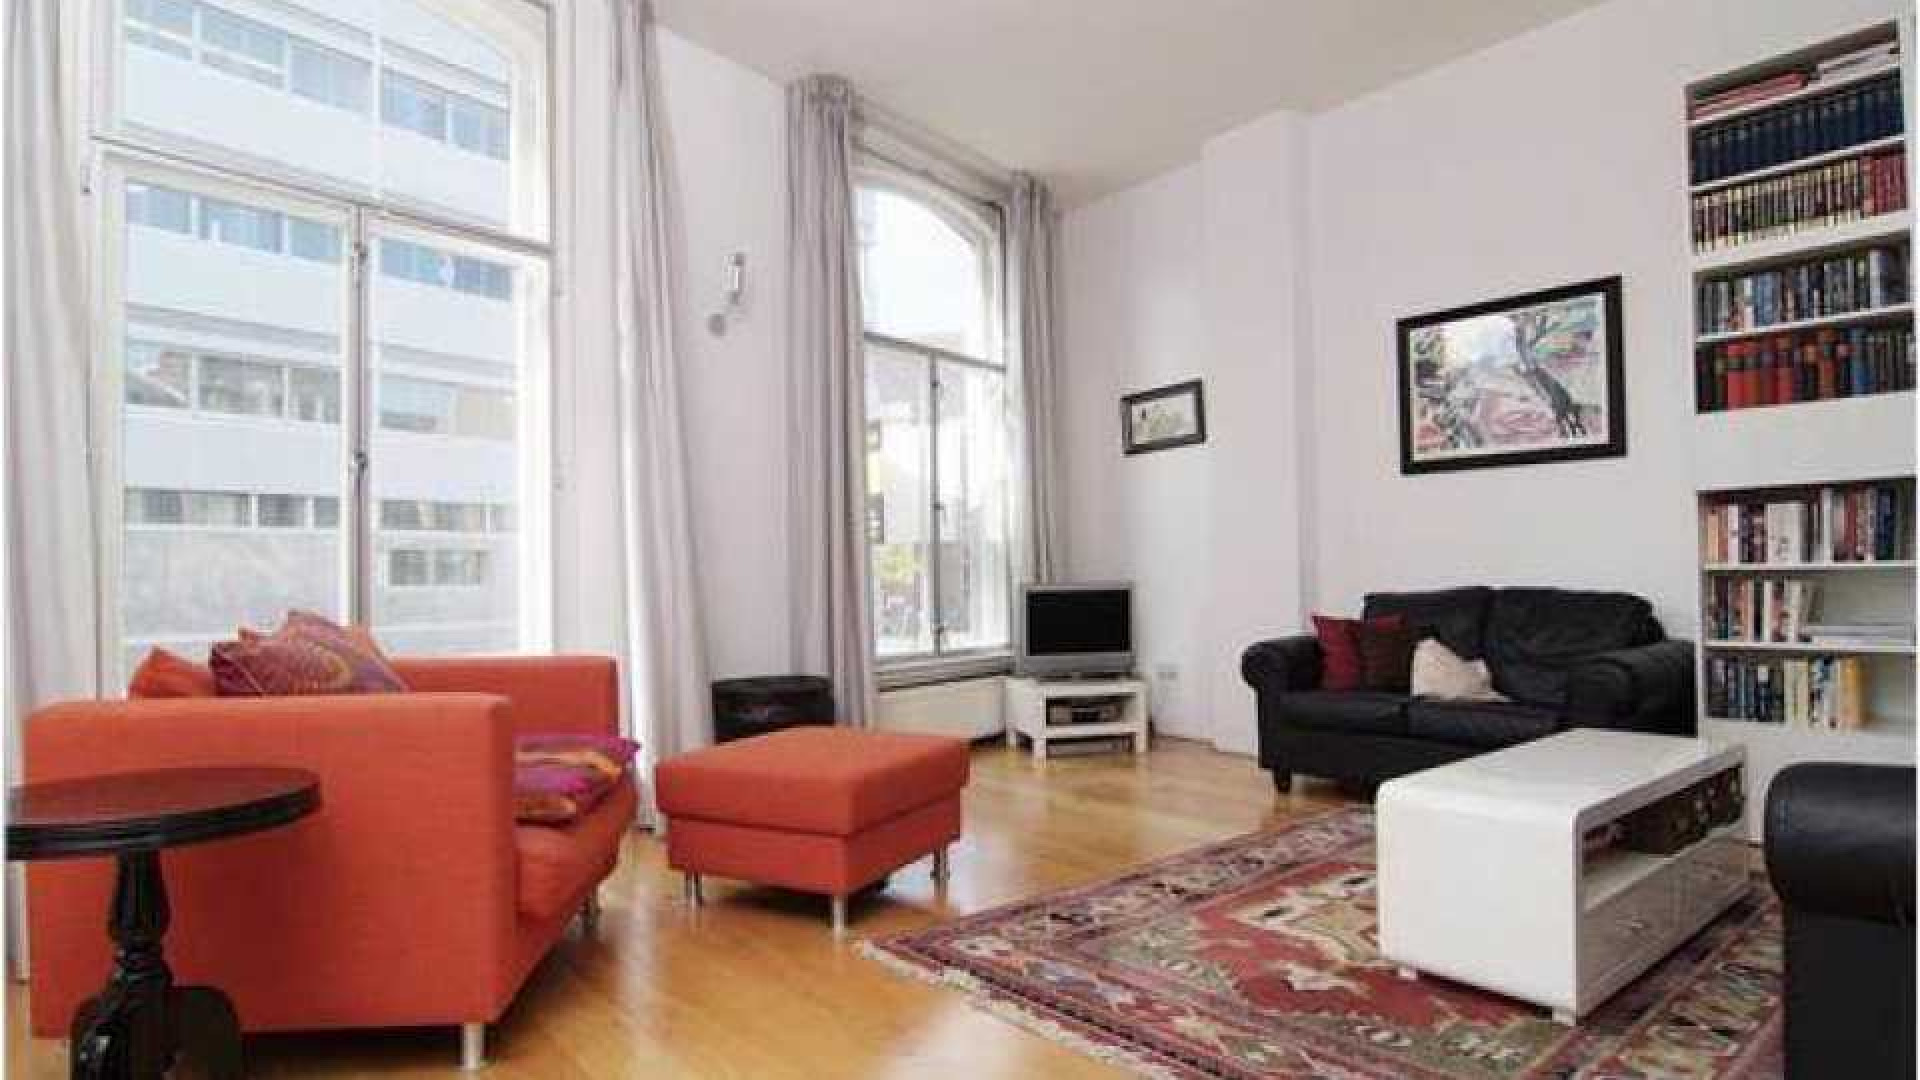 Charles Groenhuijsen huurt leuk appartement in centrum van Utrecht. Zie foto's 10